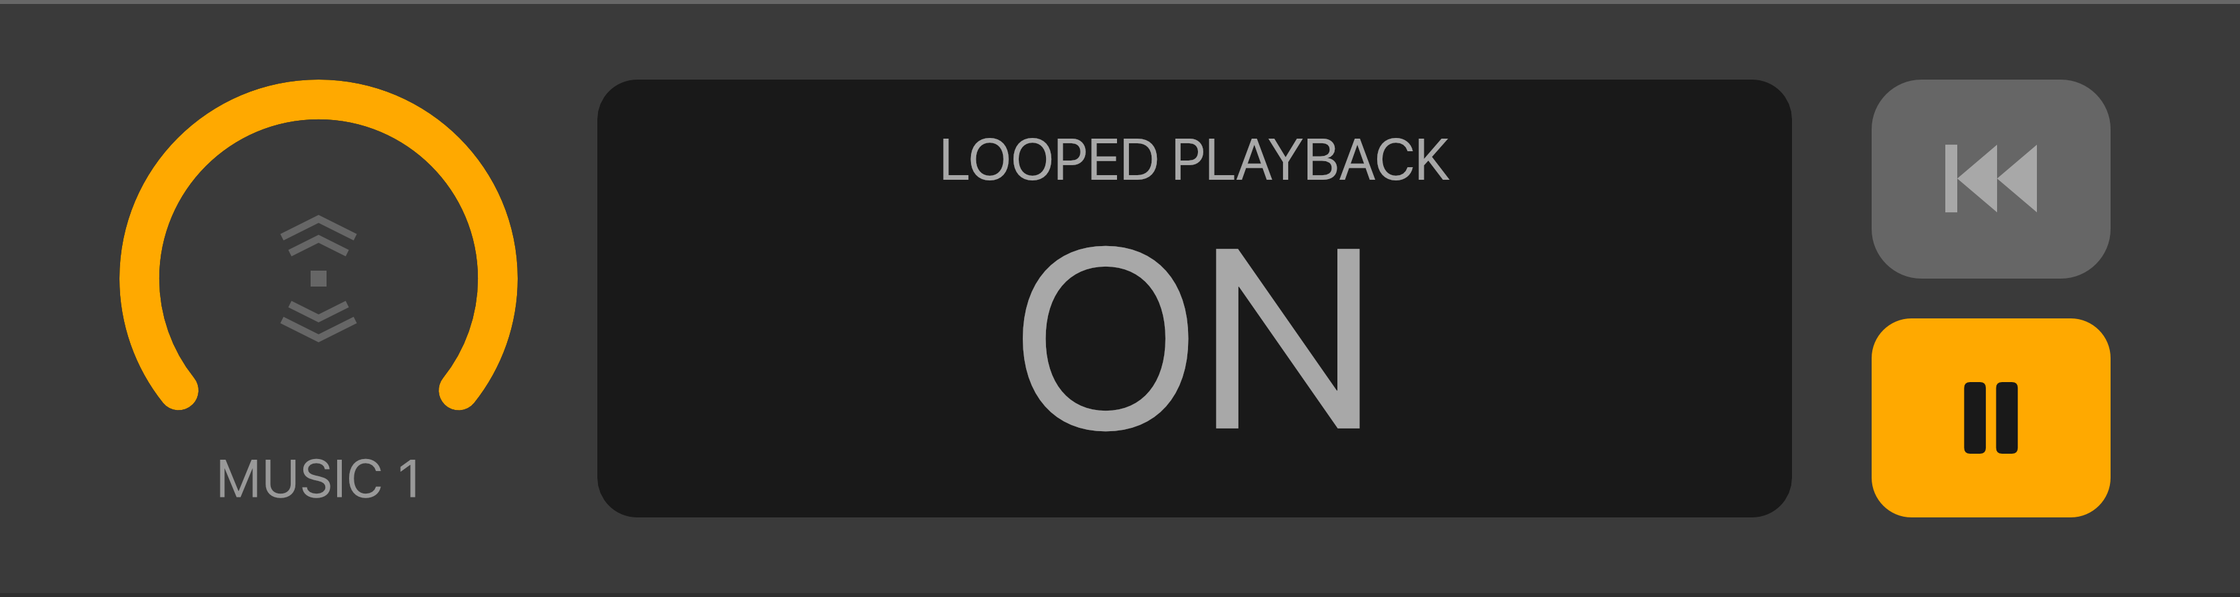 Loop_on.png